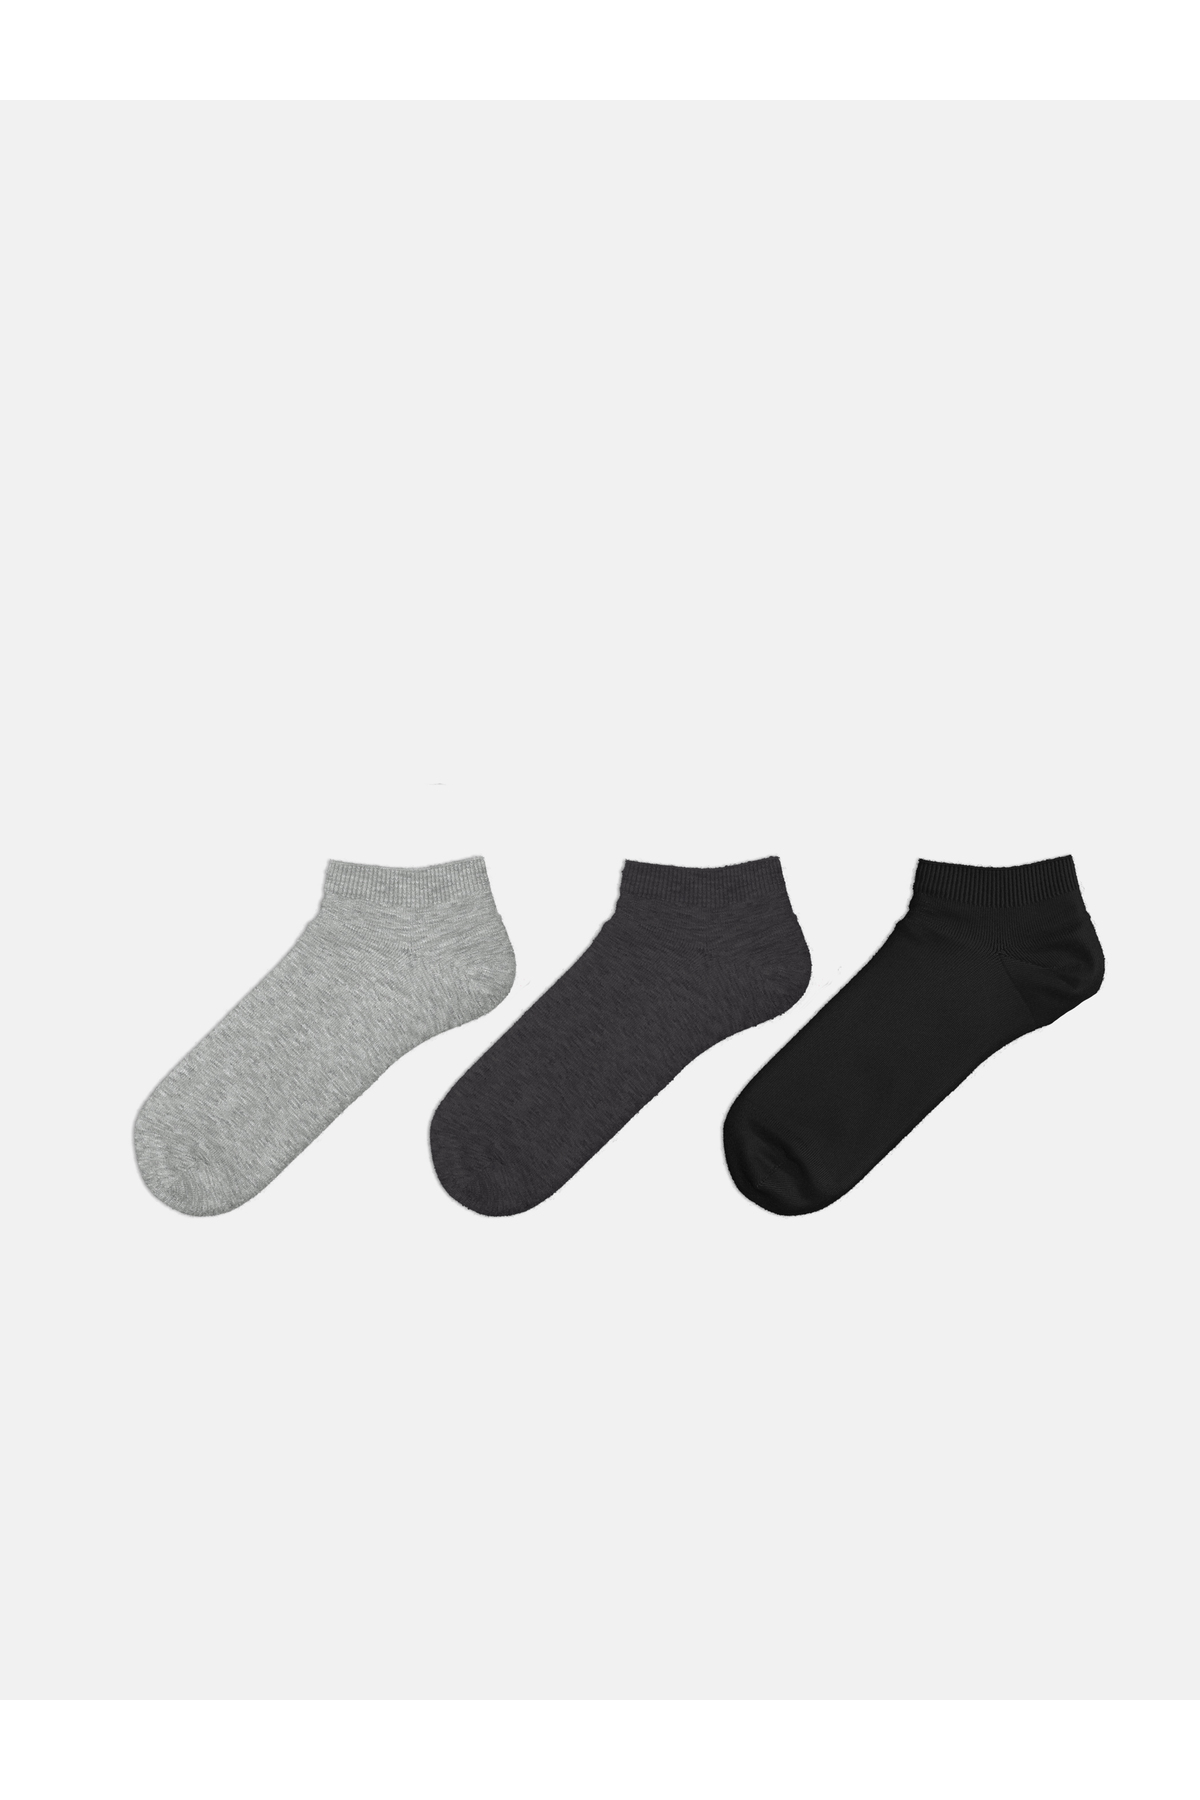 LC Waikiki 3-Pack Men's Plain Booties Socks